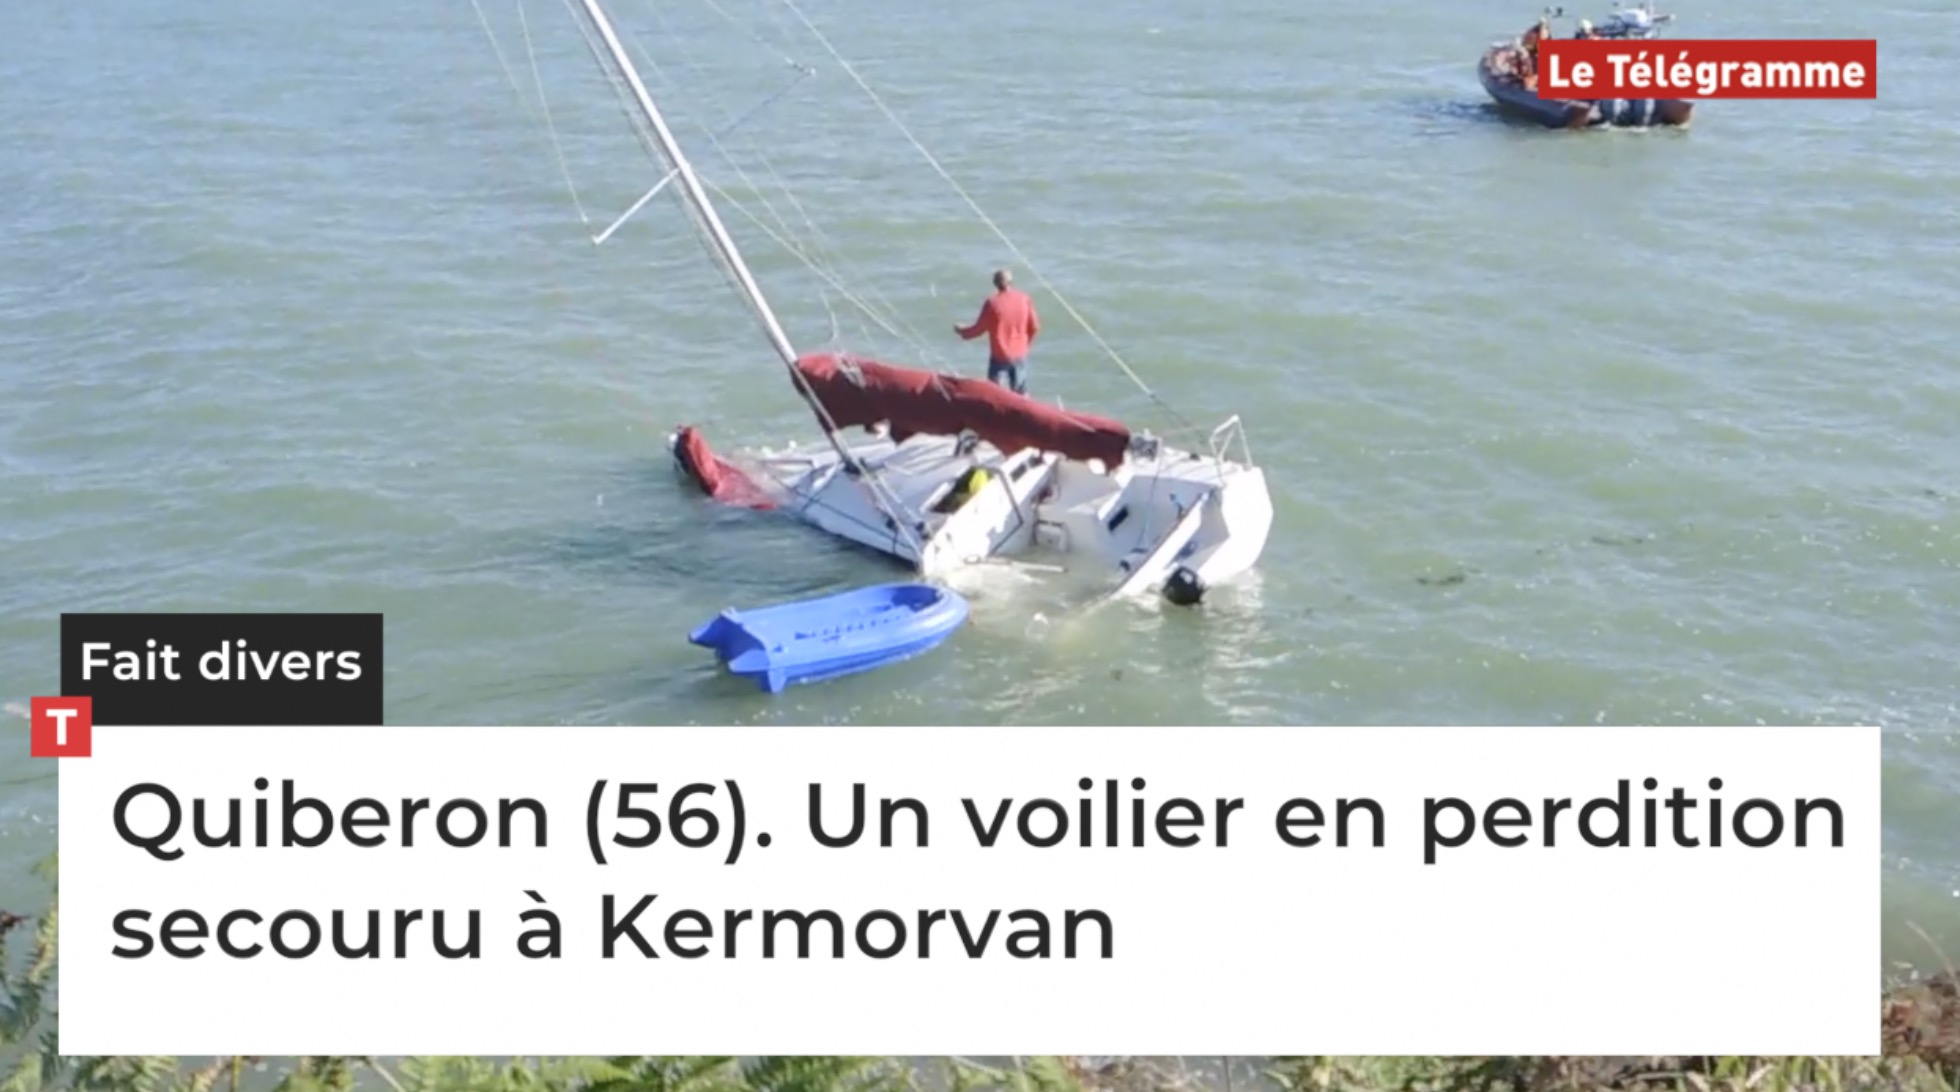 Quiberon (56). Un voilier en perdition secouru à Kermorvan (Le Télégramme)